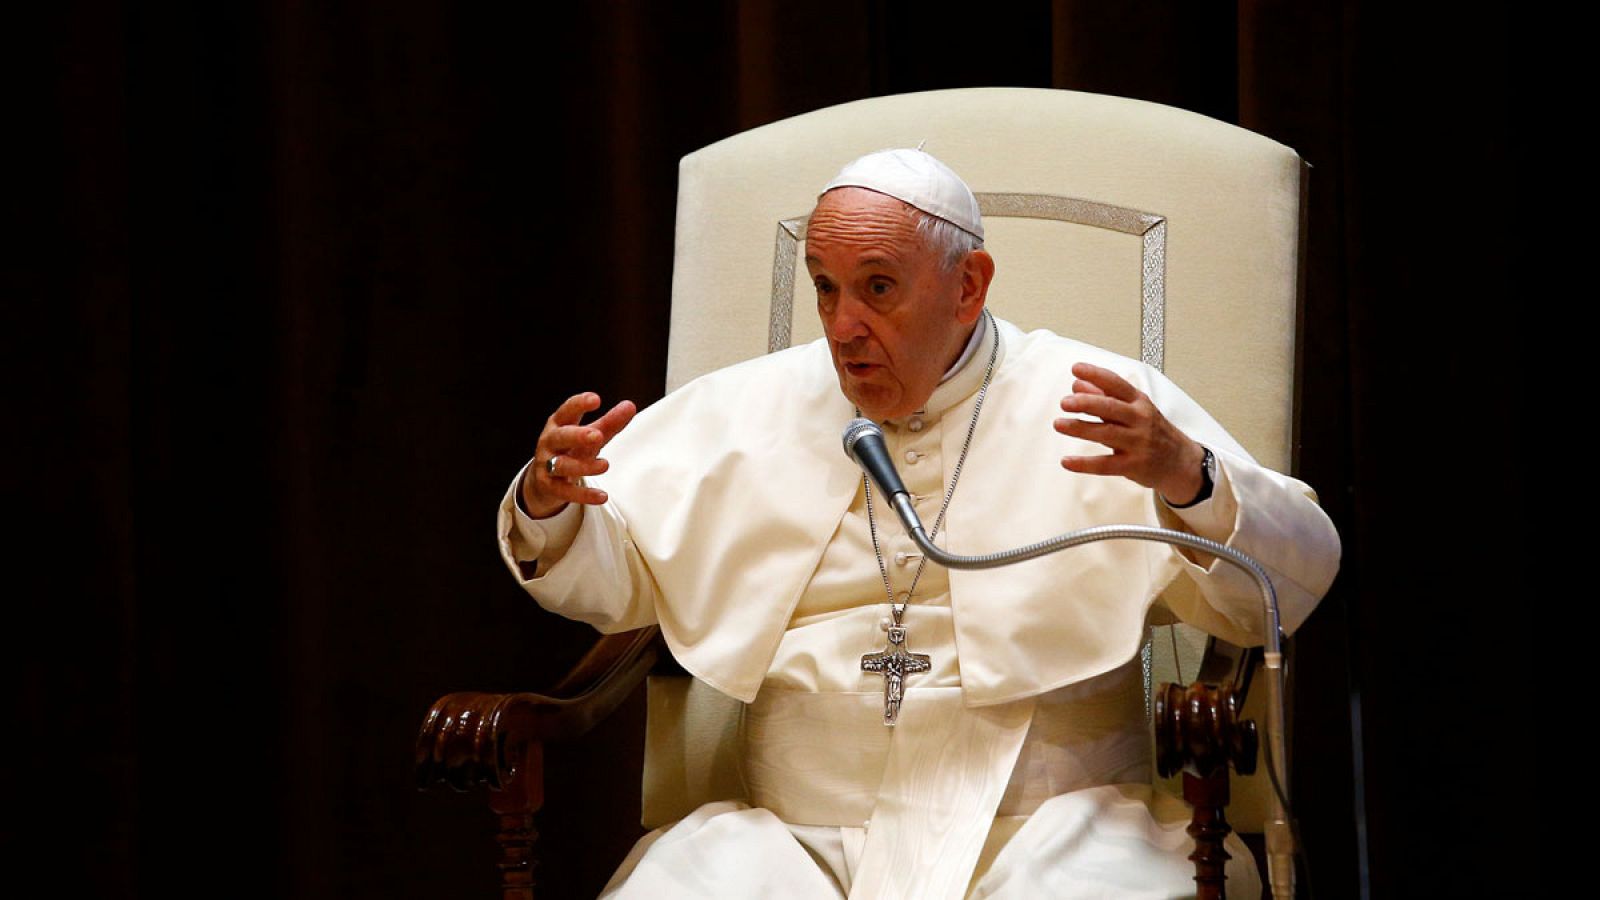 El papa Francisco, durante un encuentro reciente en el Vaticano.